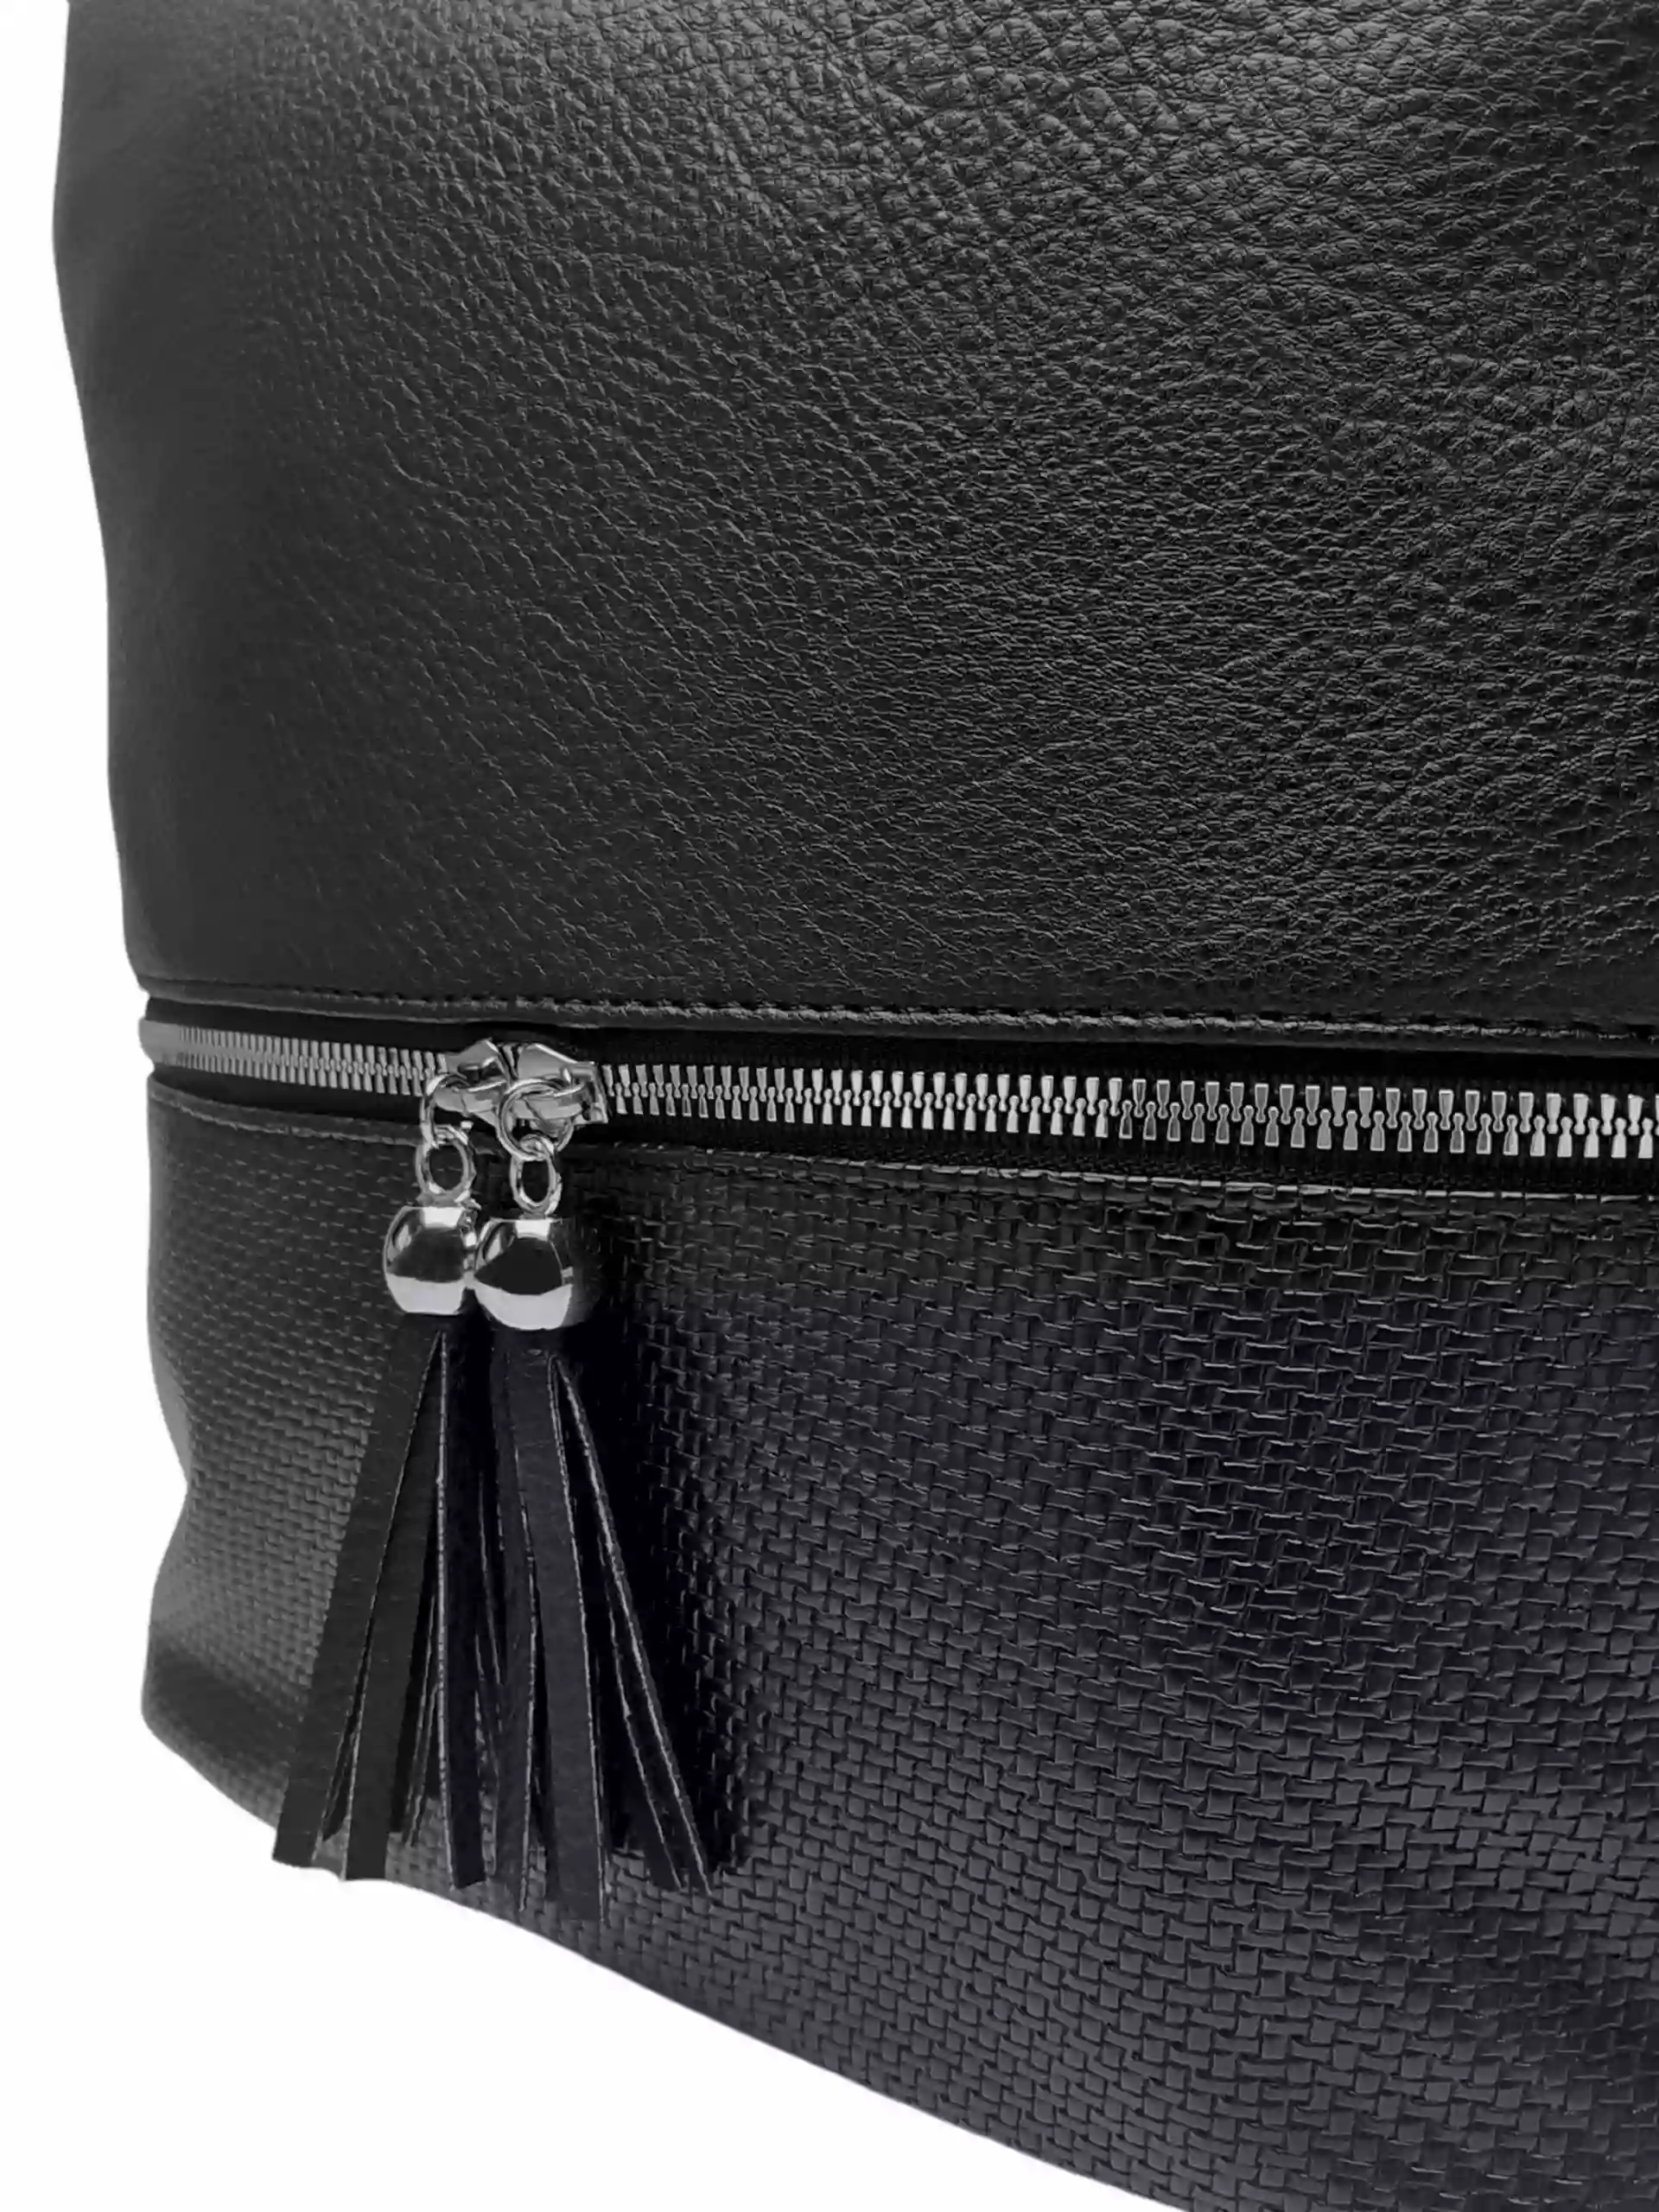 Střední černý kabelko-batoh 2v1 s třásněmi, Bella Belly, 5394, detail kabelko-batohu